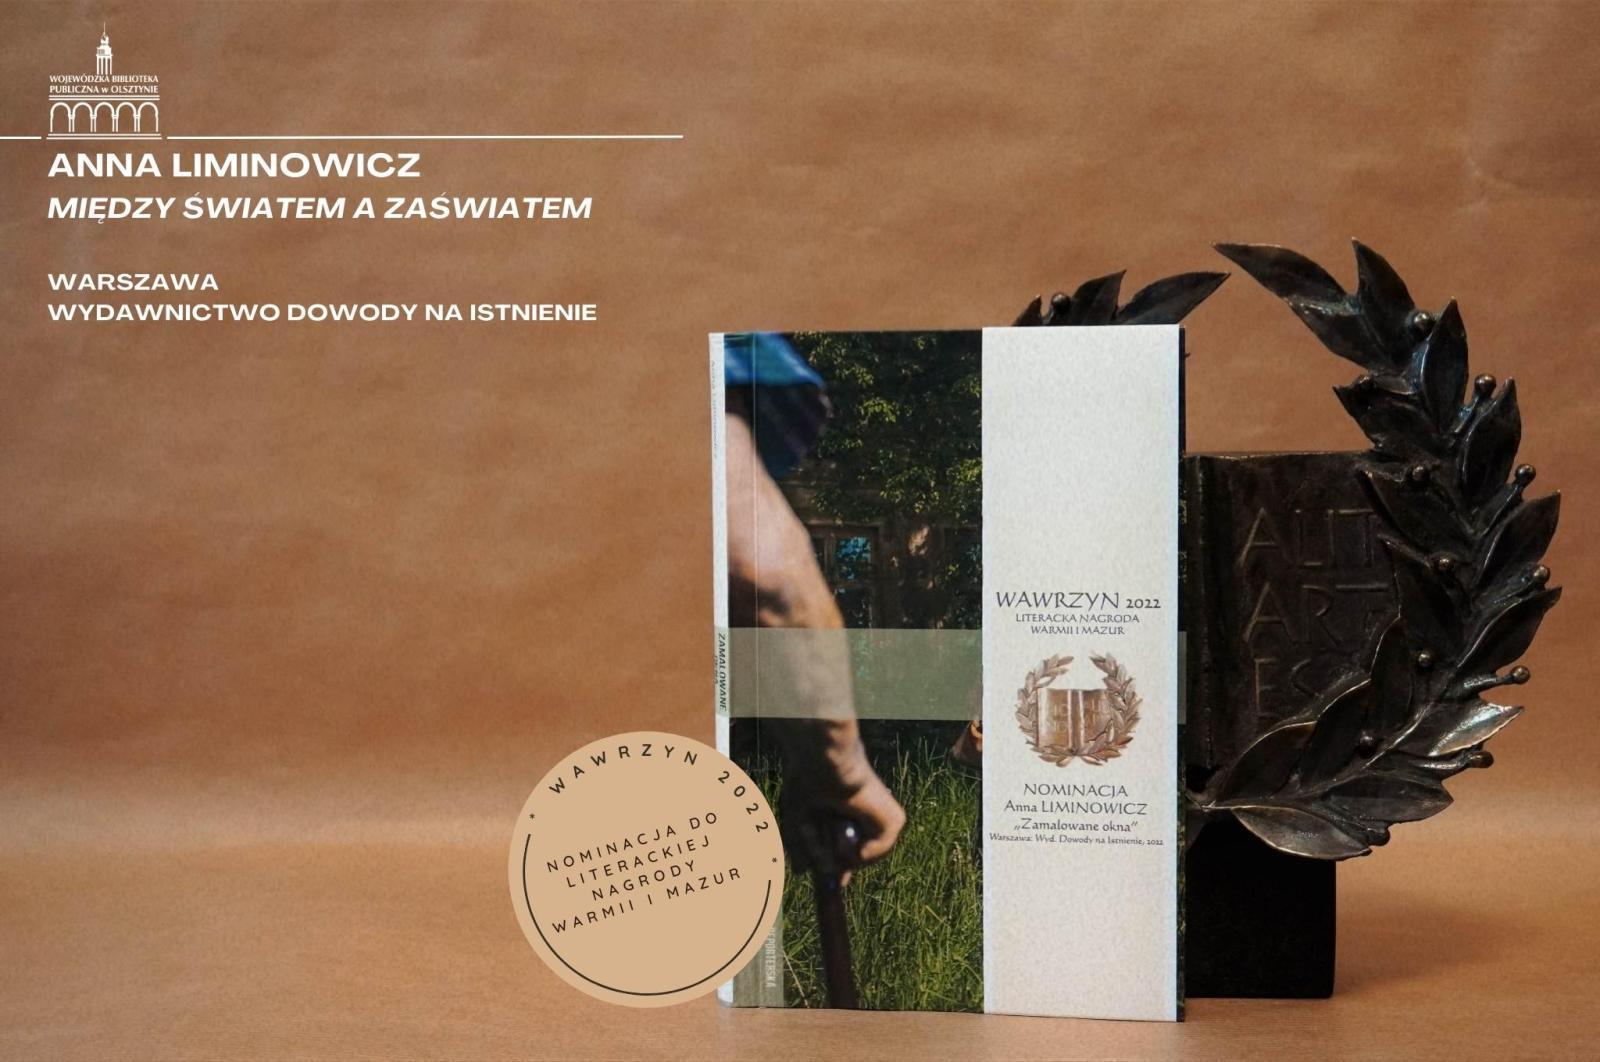 My book Zamalowane okna has been nominated for the Warmia and Masuria literary award